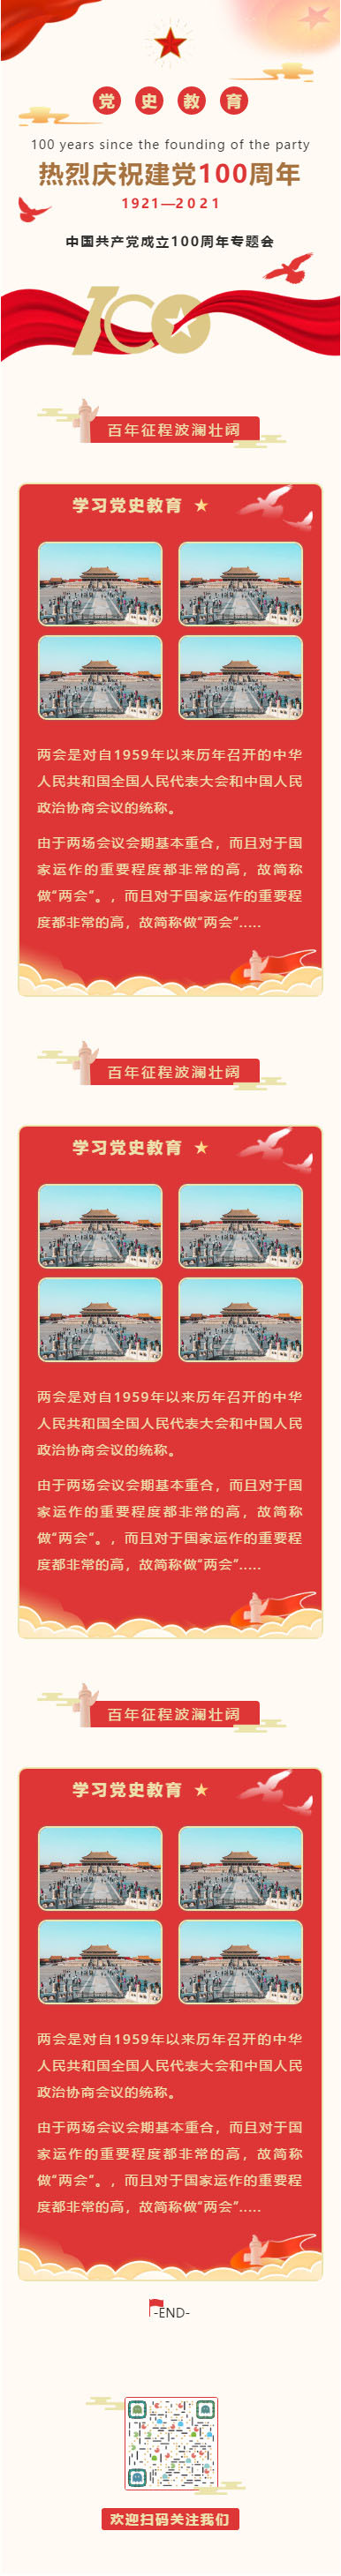 中国共产党成立100周年两会微信公众号党建推文模板建党节推送图文素材